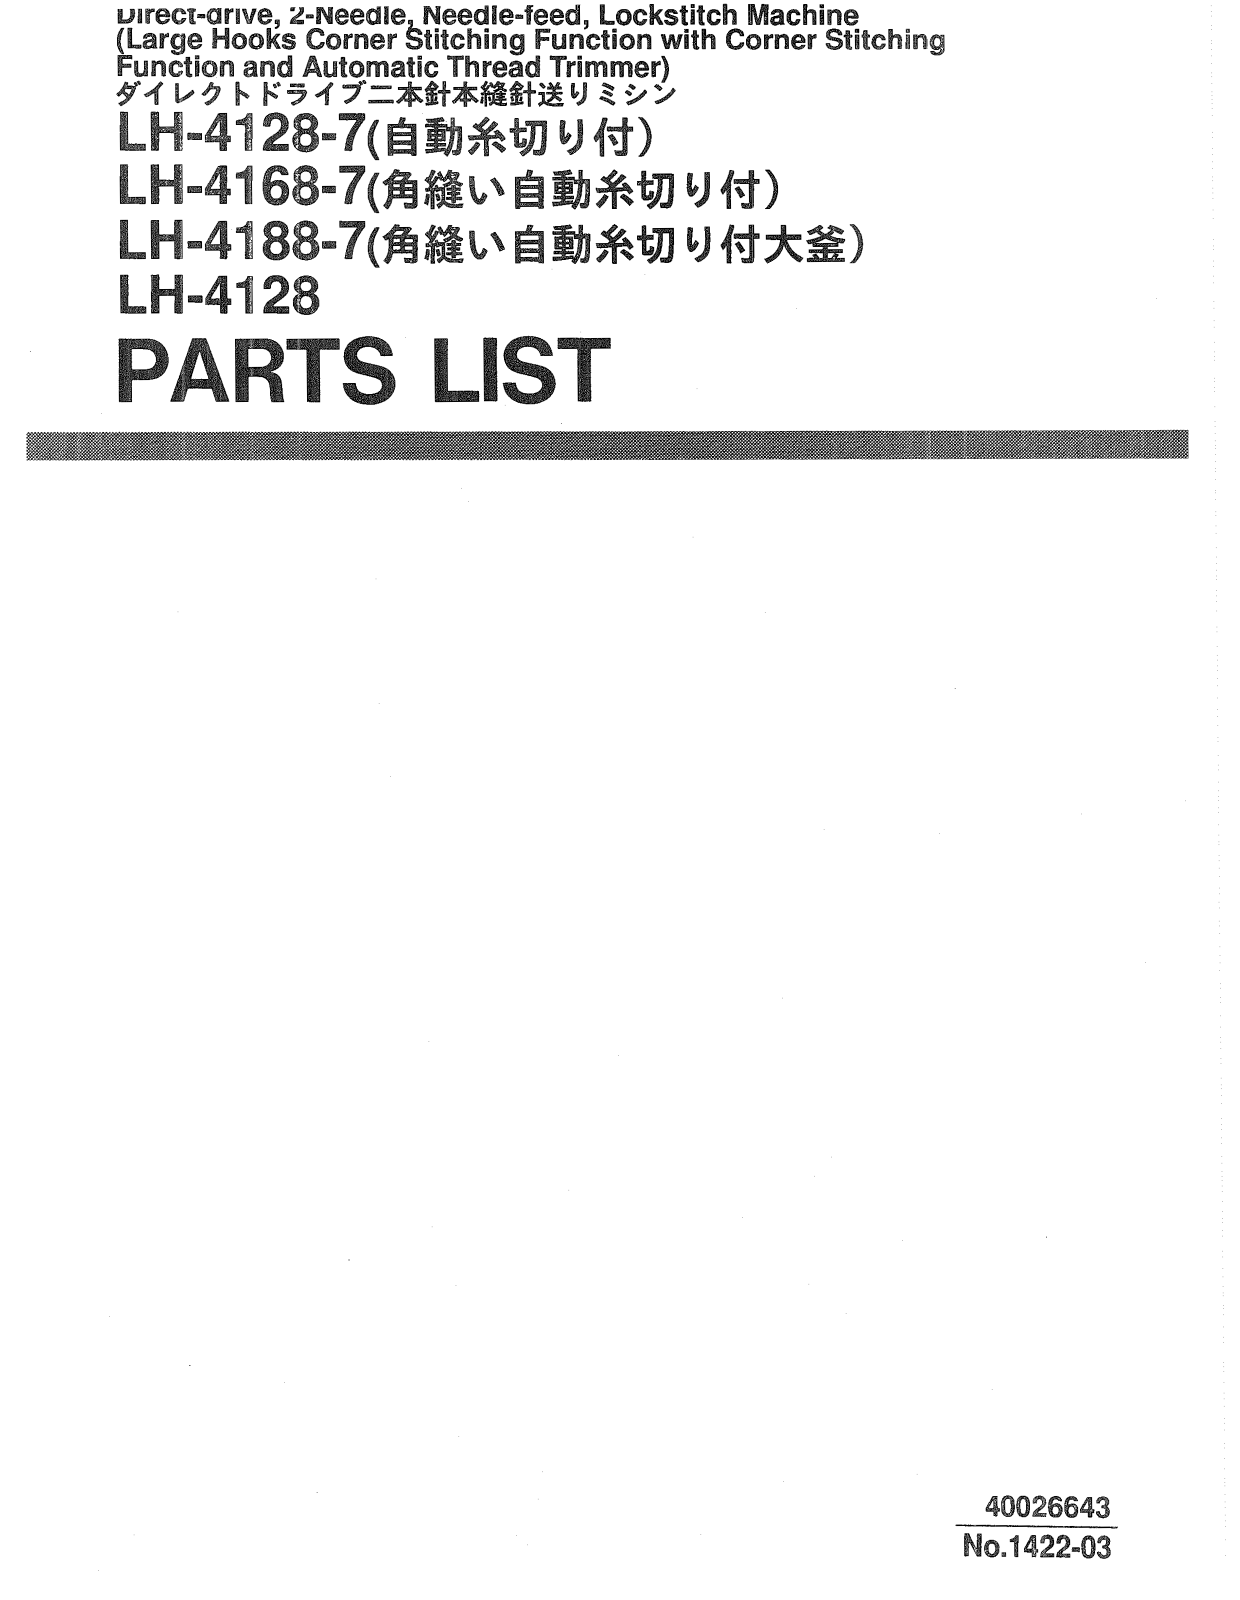 Juki LH-4128, LH-4128-7, LH-4168-7, LH-4188-7 Parts List